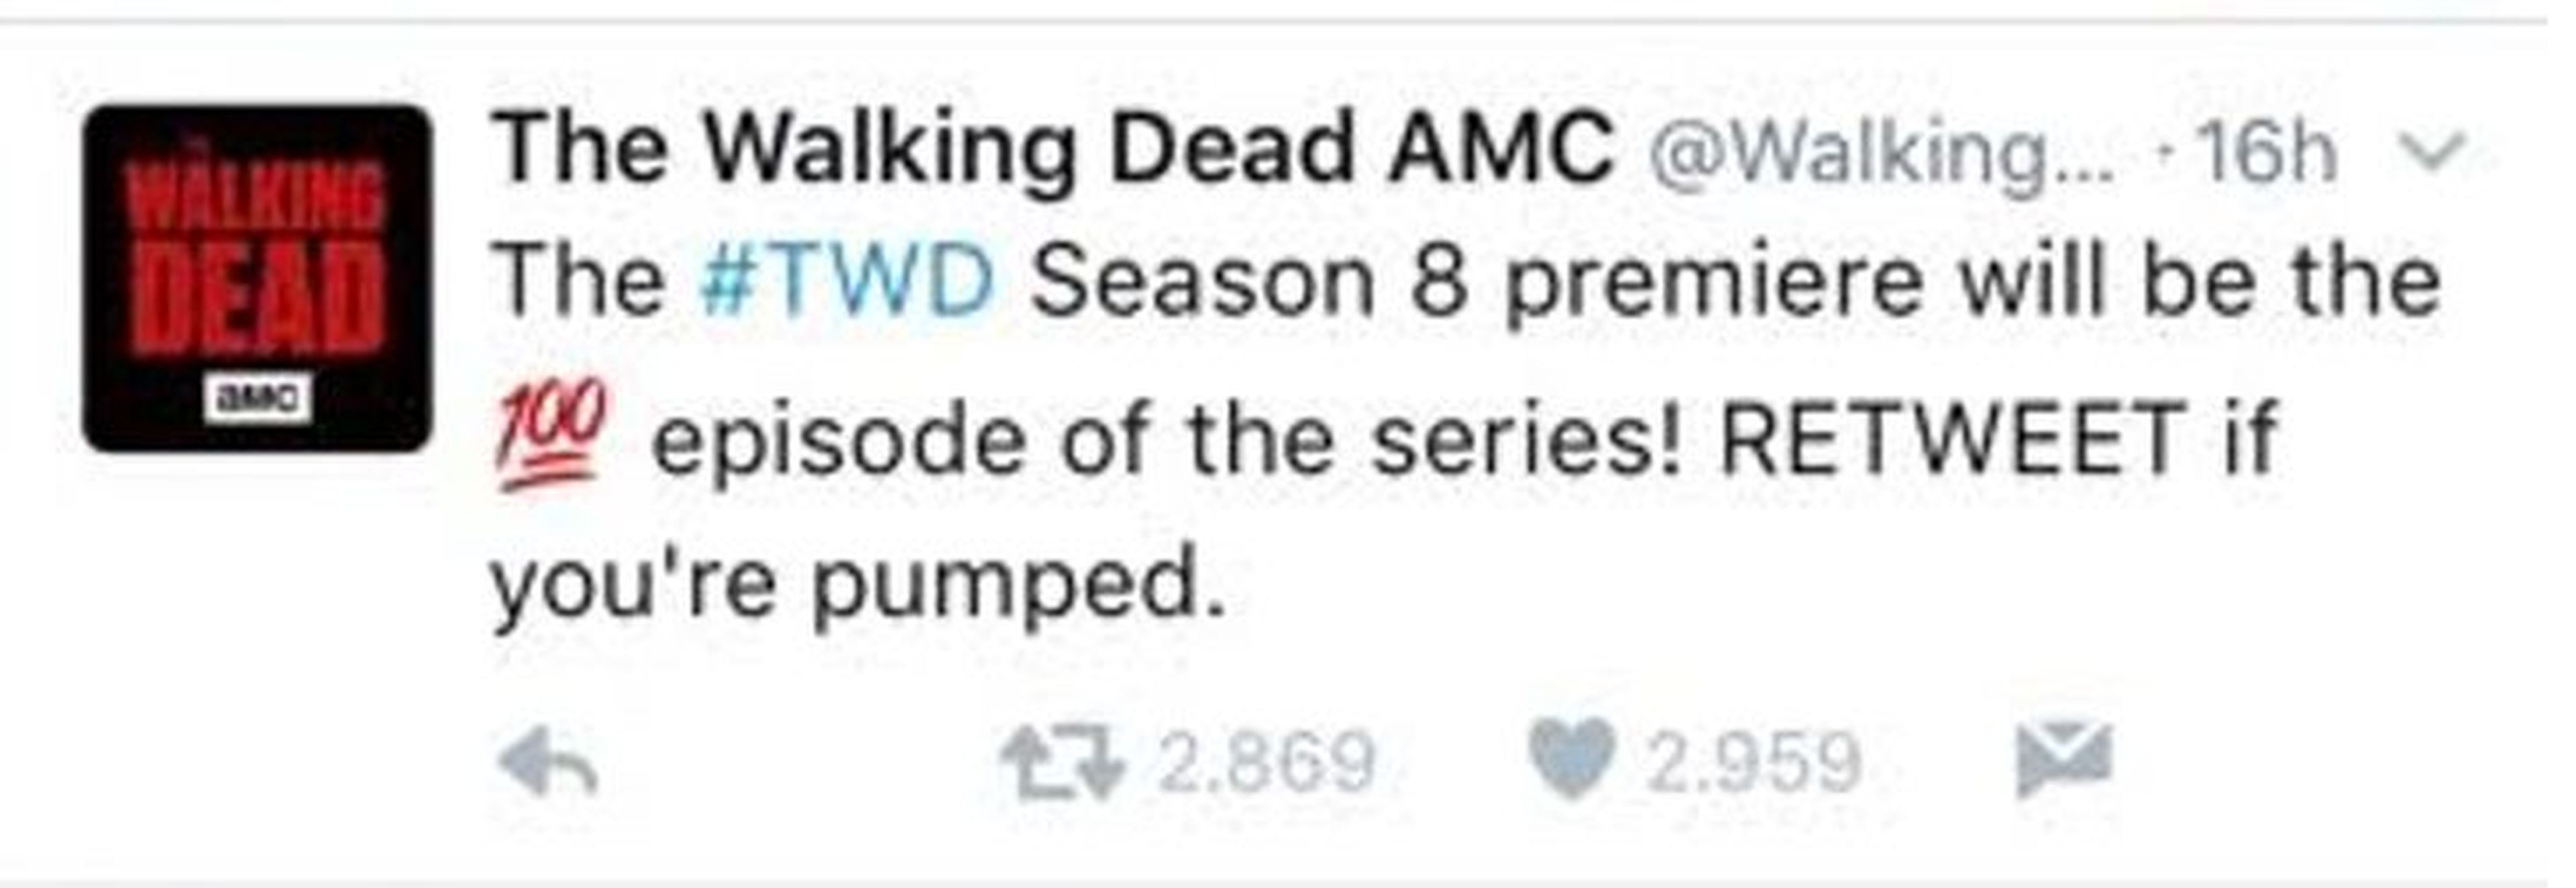 The Walking Dead Twitter